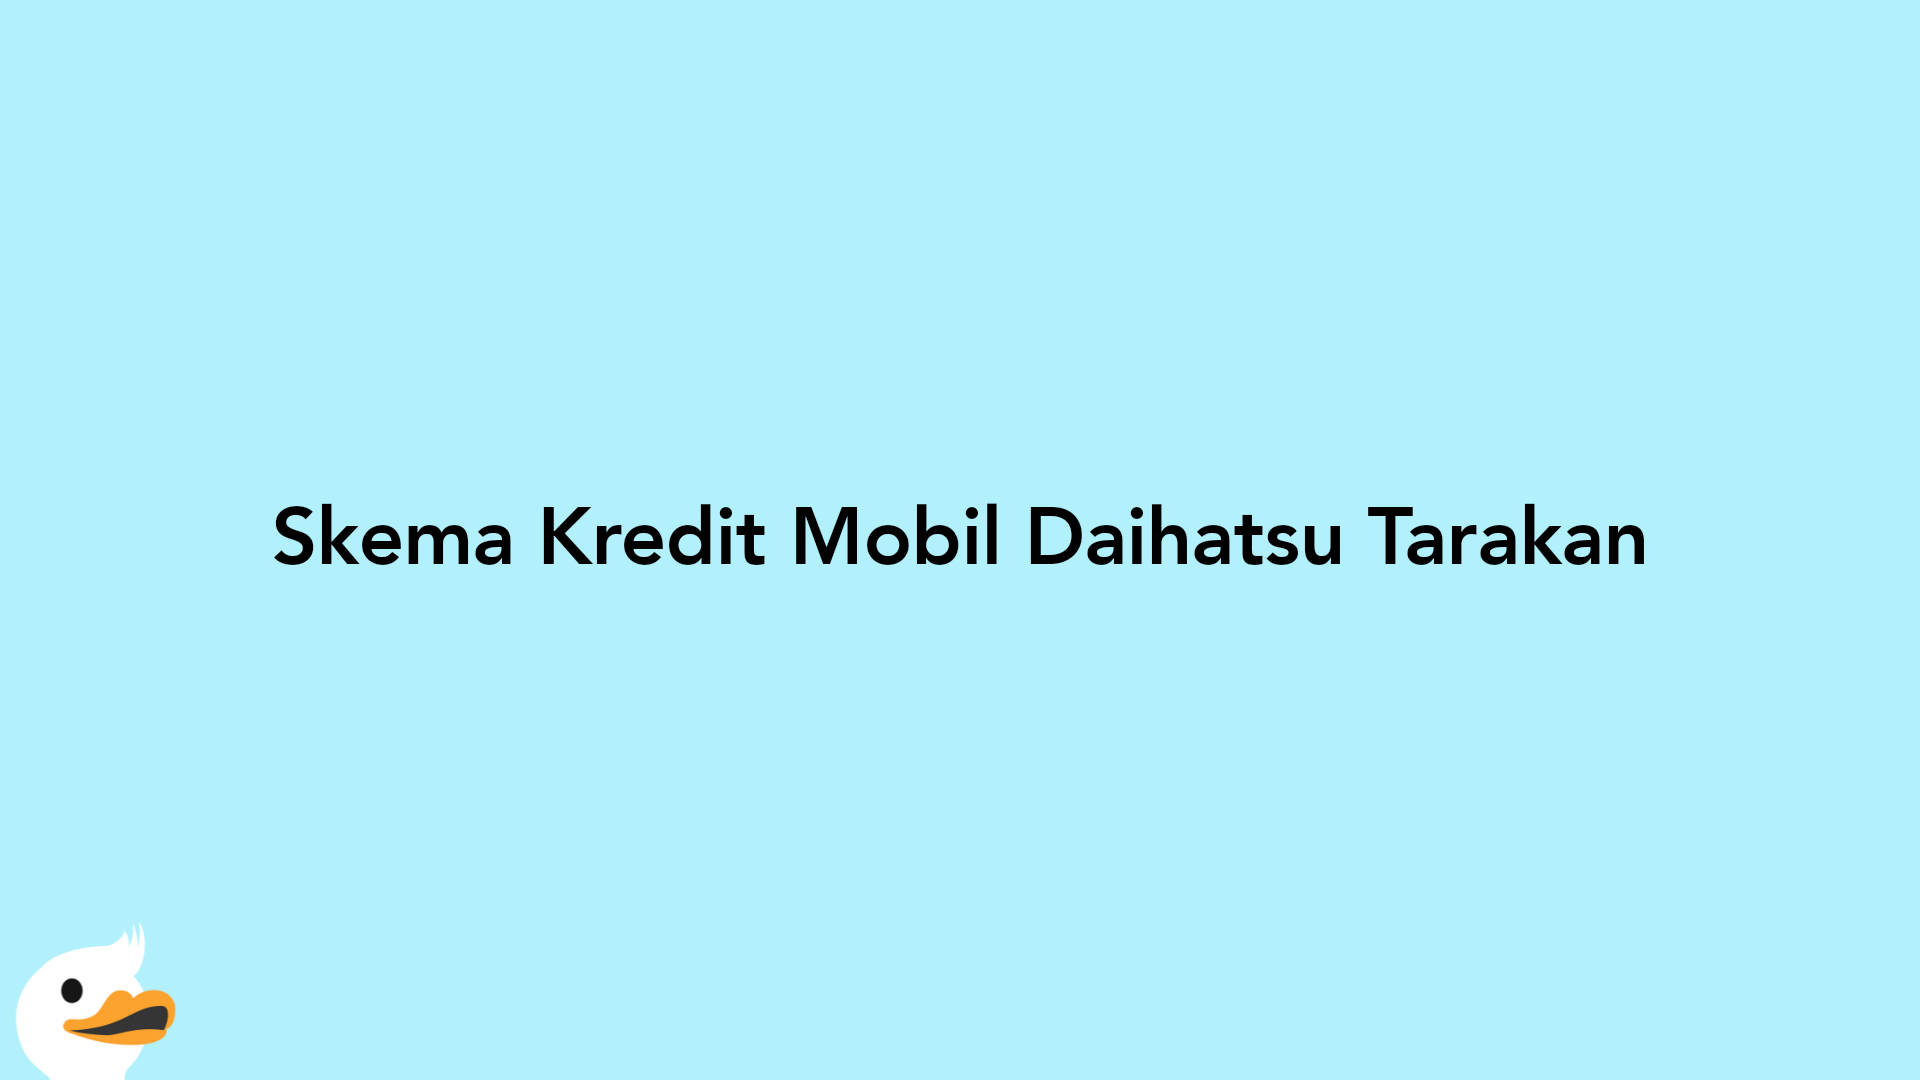 Skema Kredit Mobil Daihatsu Tarakan